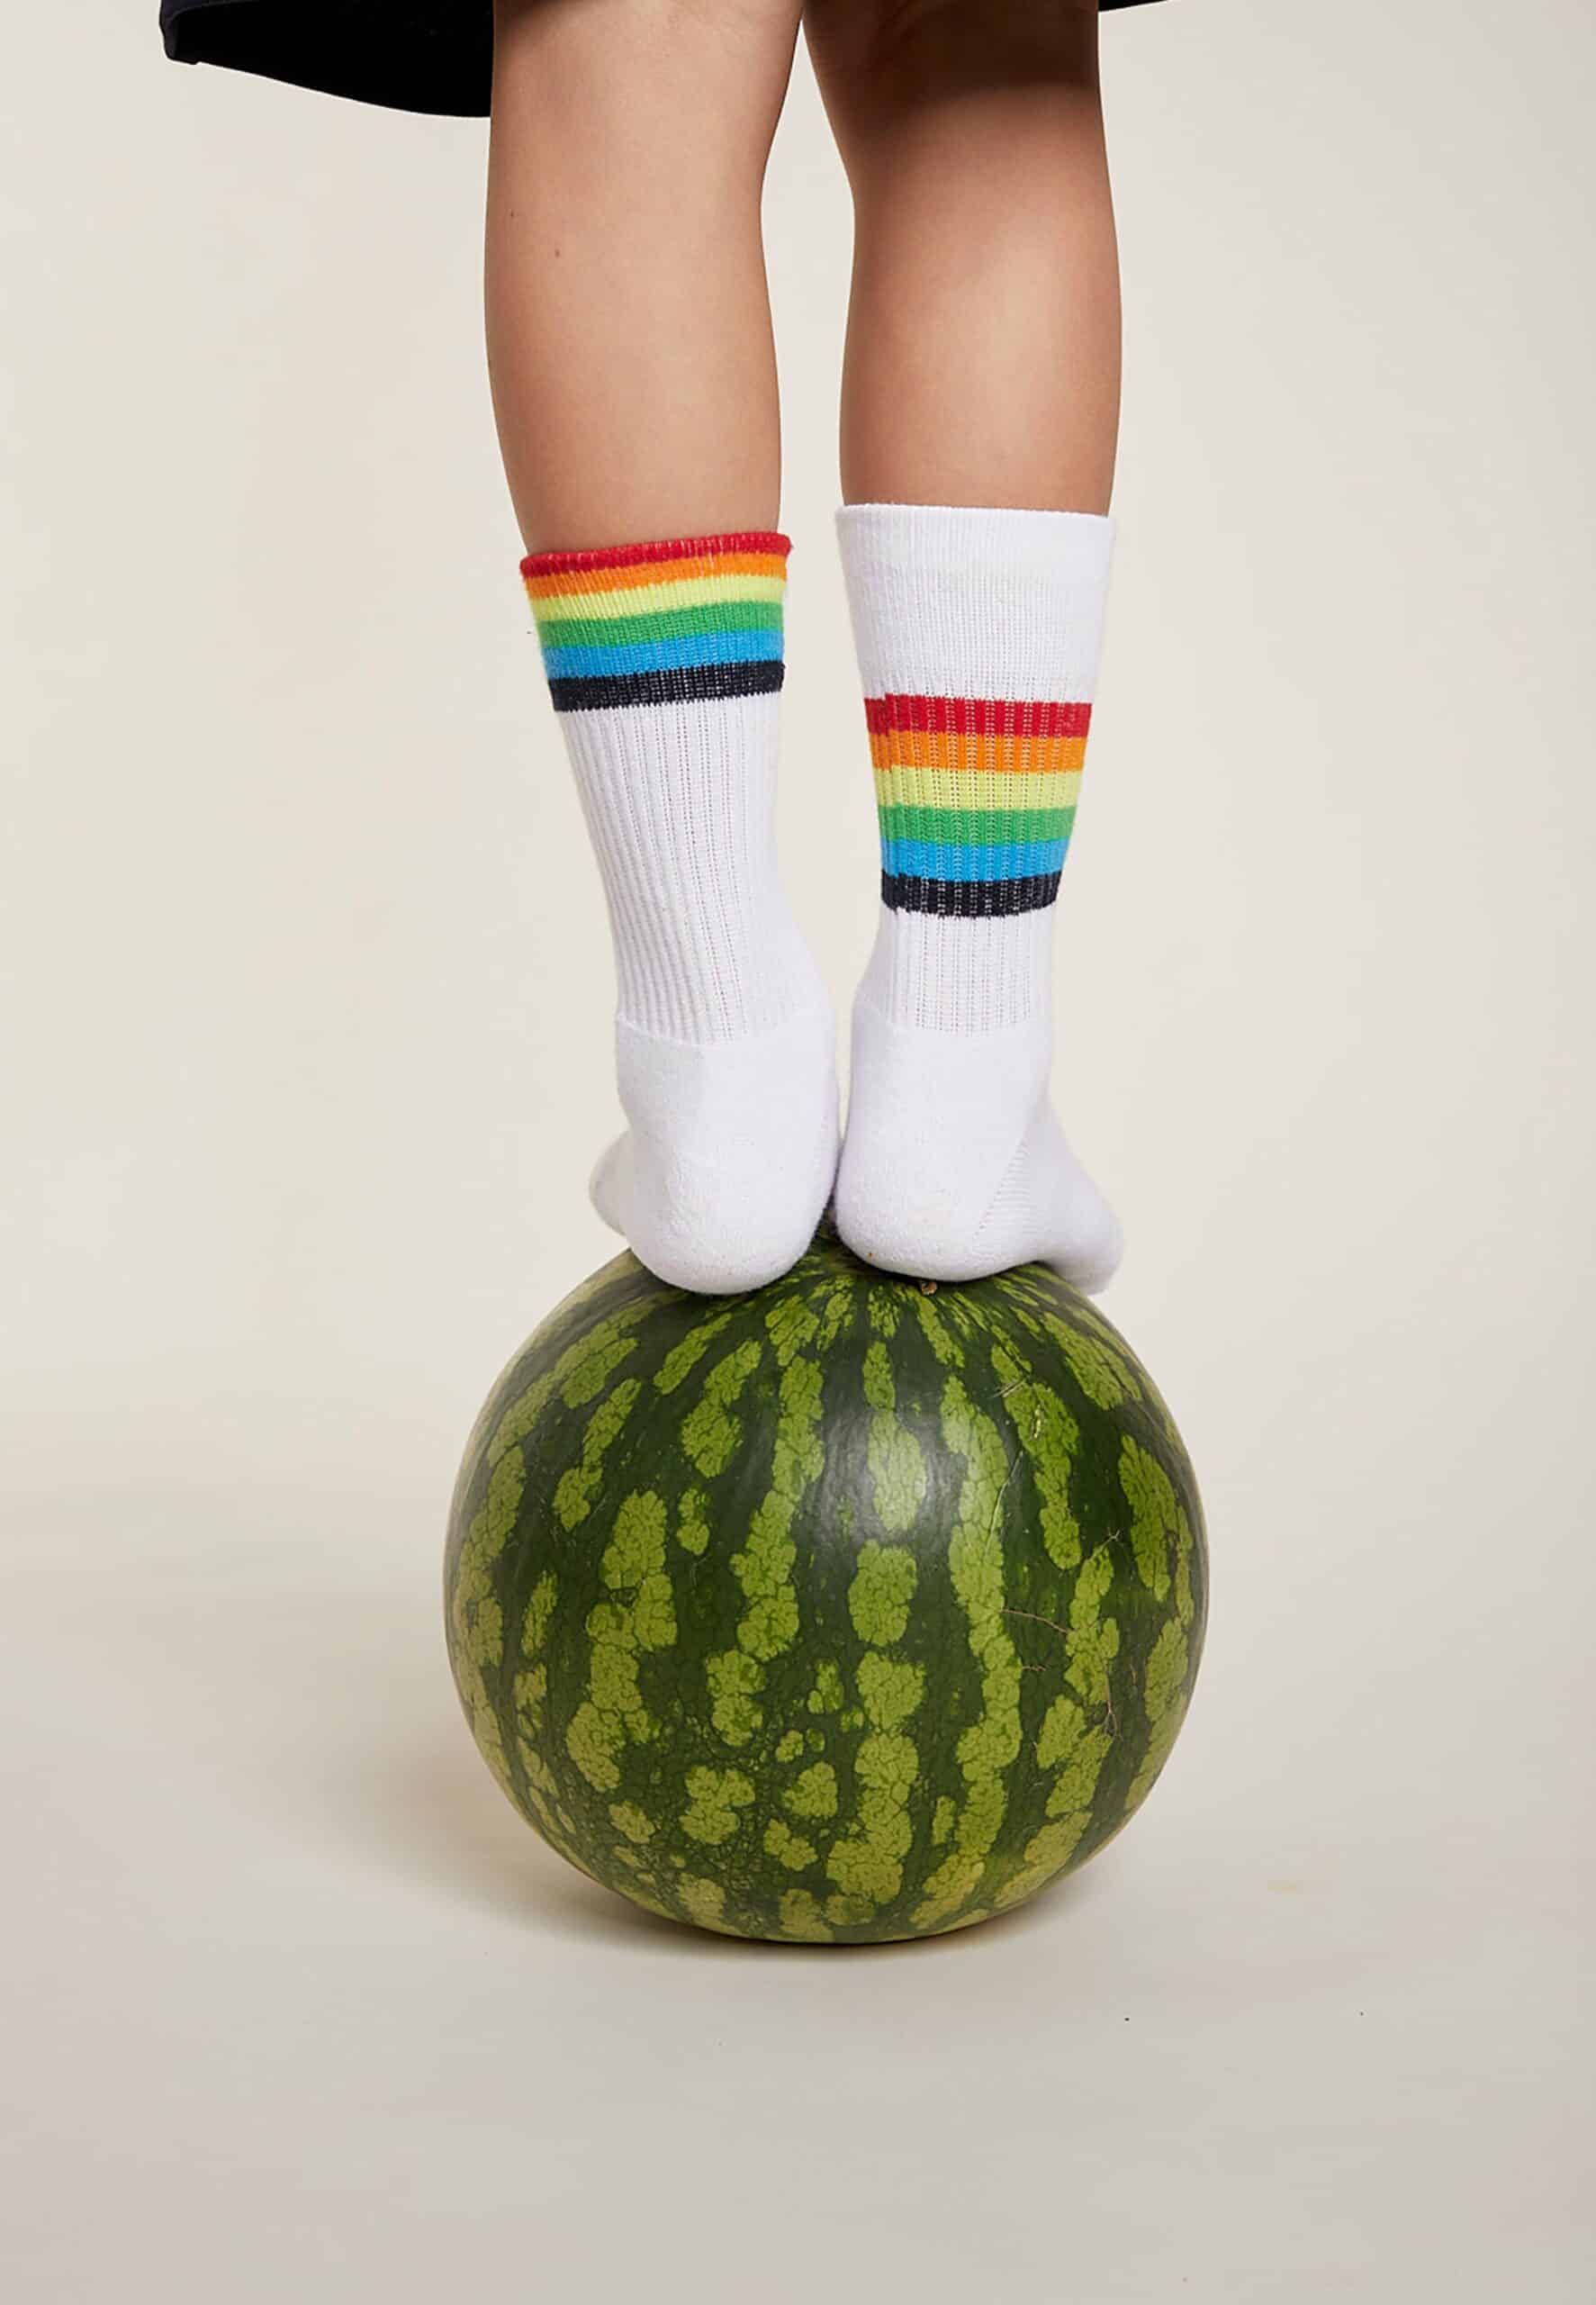 s.Oliver Kinder Socken originals Bio-Baumwolle 4er Pack rainbow kaufen bei